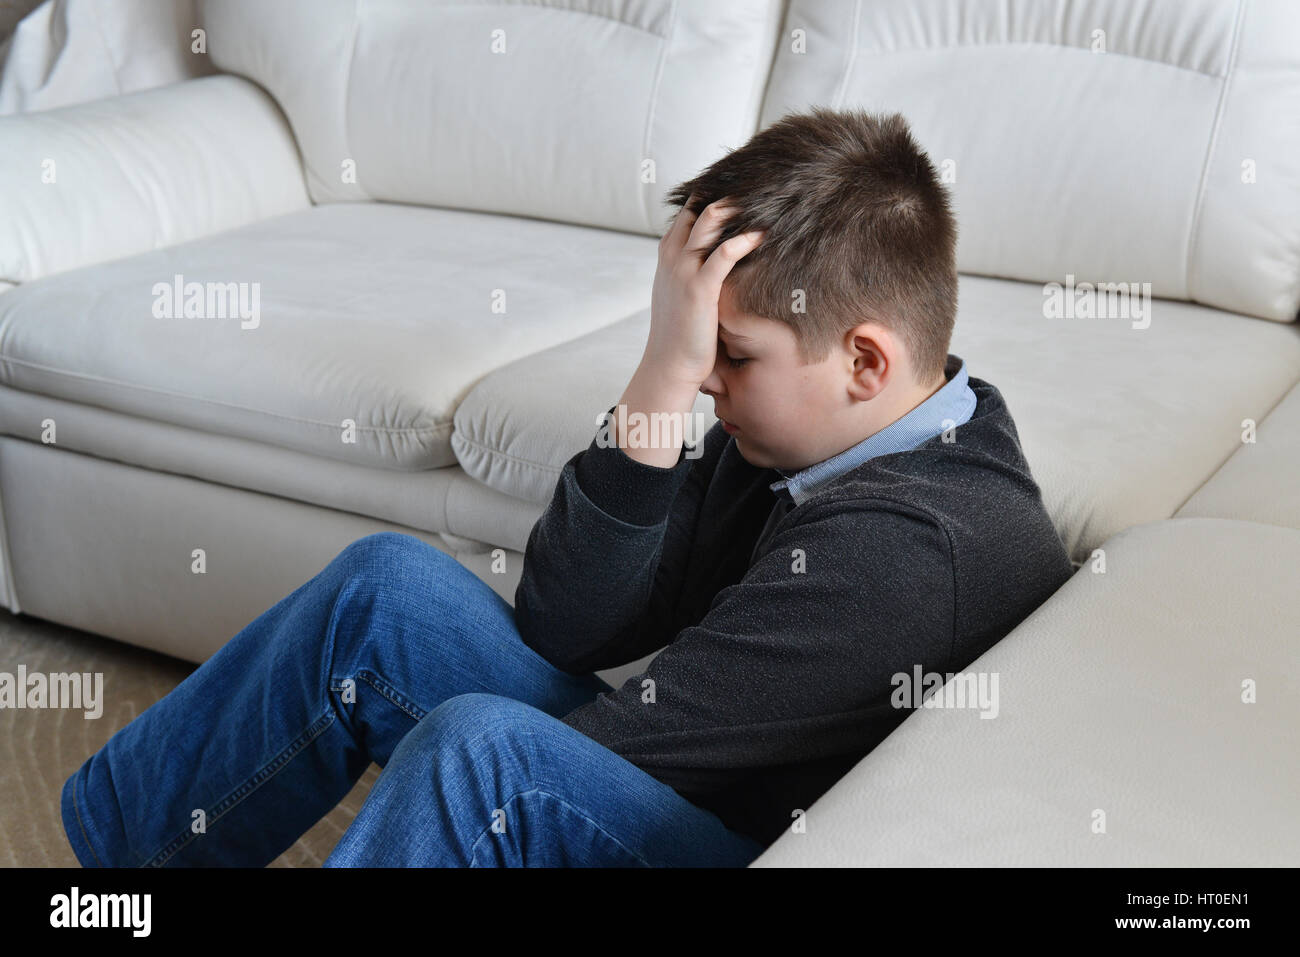 Adolescent perturbé 13 ans assis près de la table et l'holding his head in hands Banque D'Images